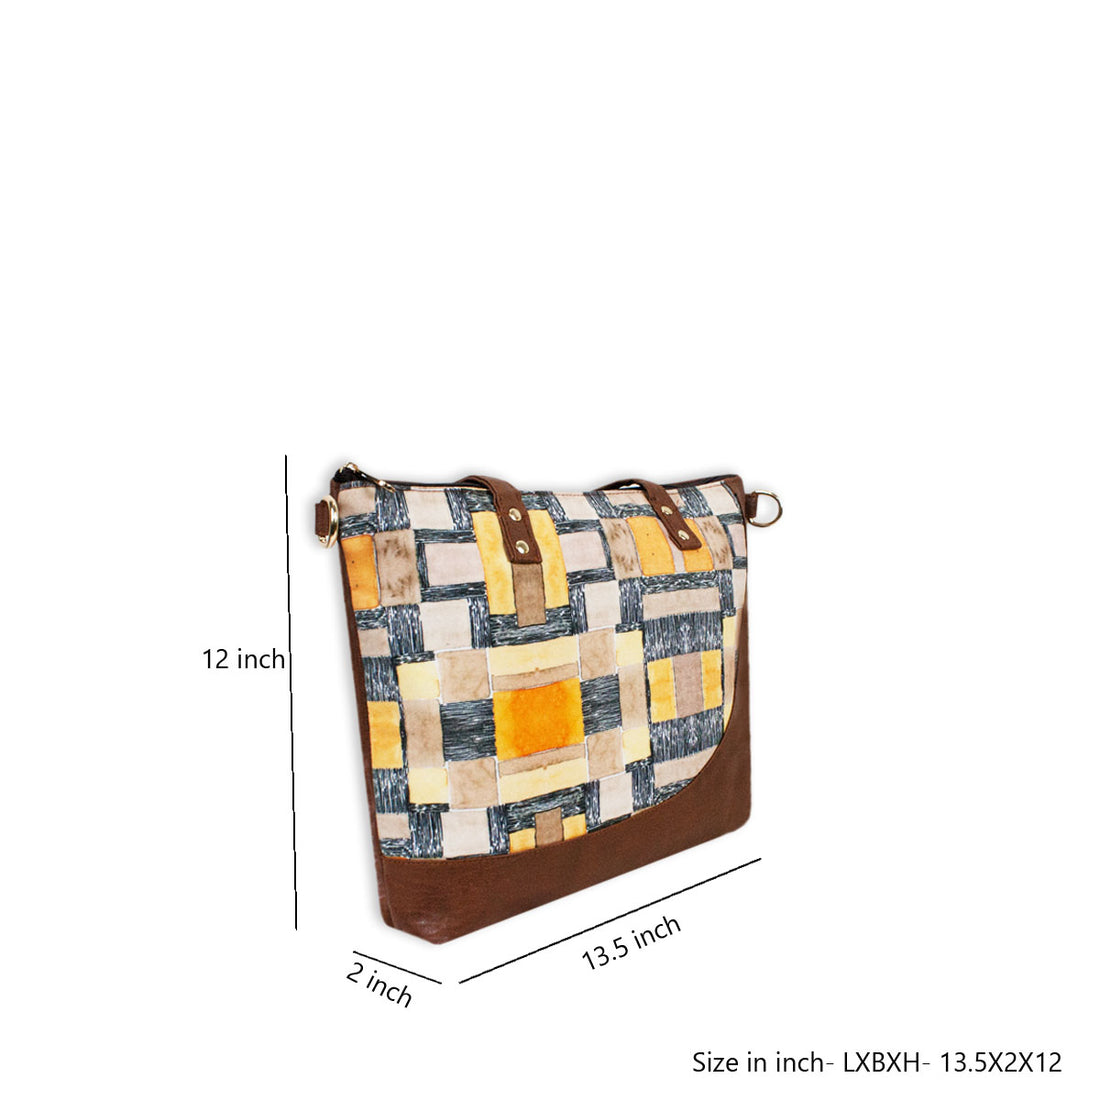 The Maze Shoulder Bag with Sling